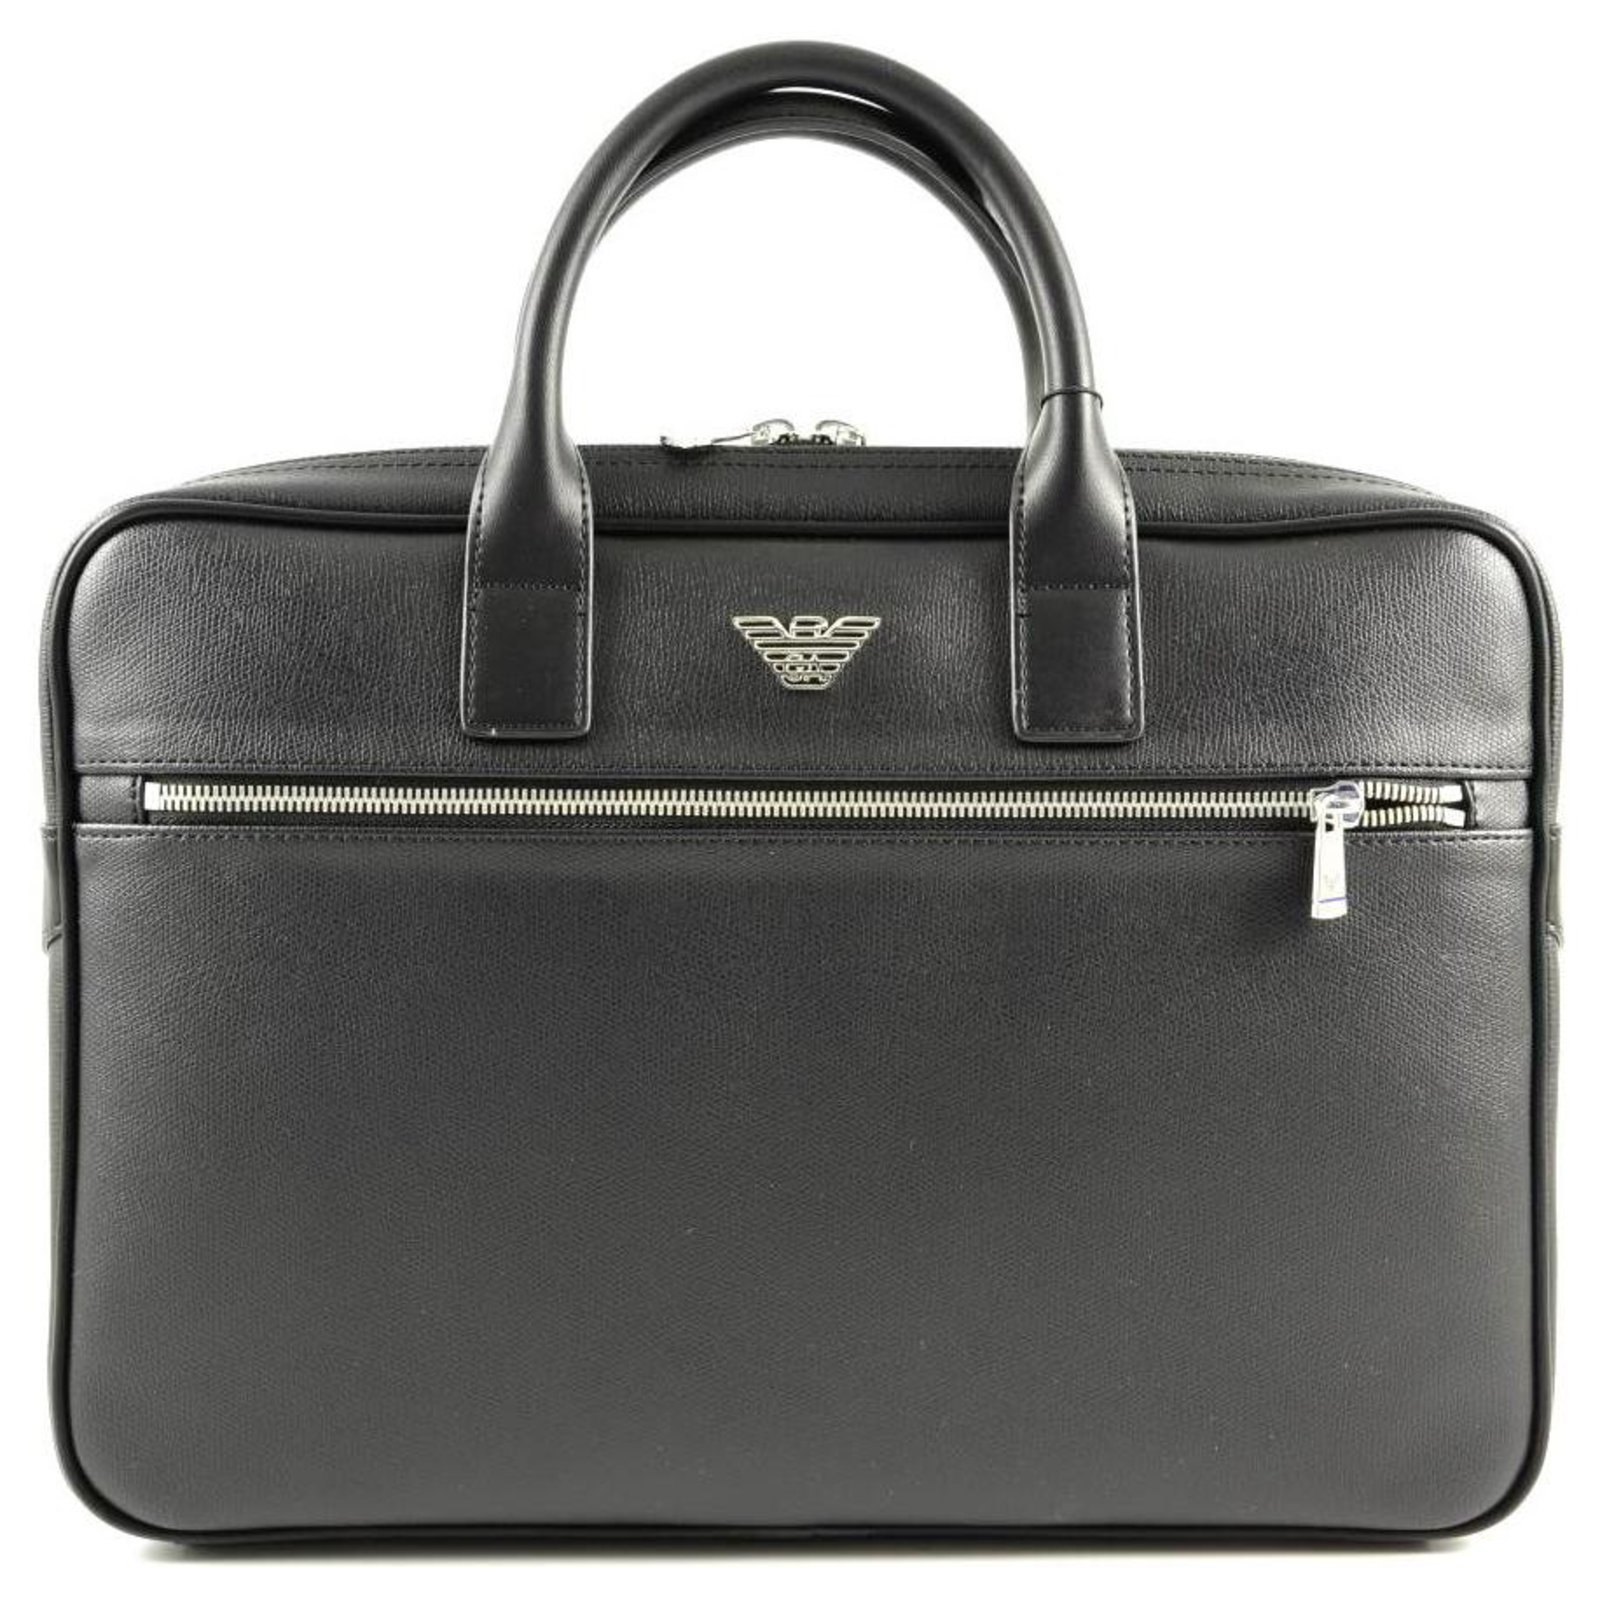 Armani Armani business bag new Bags 